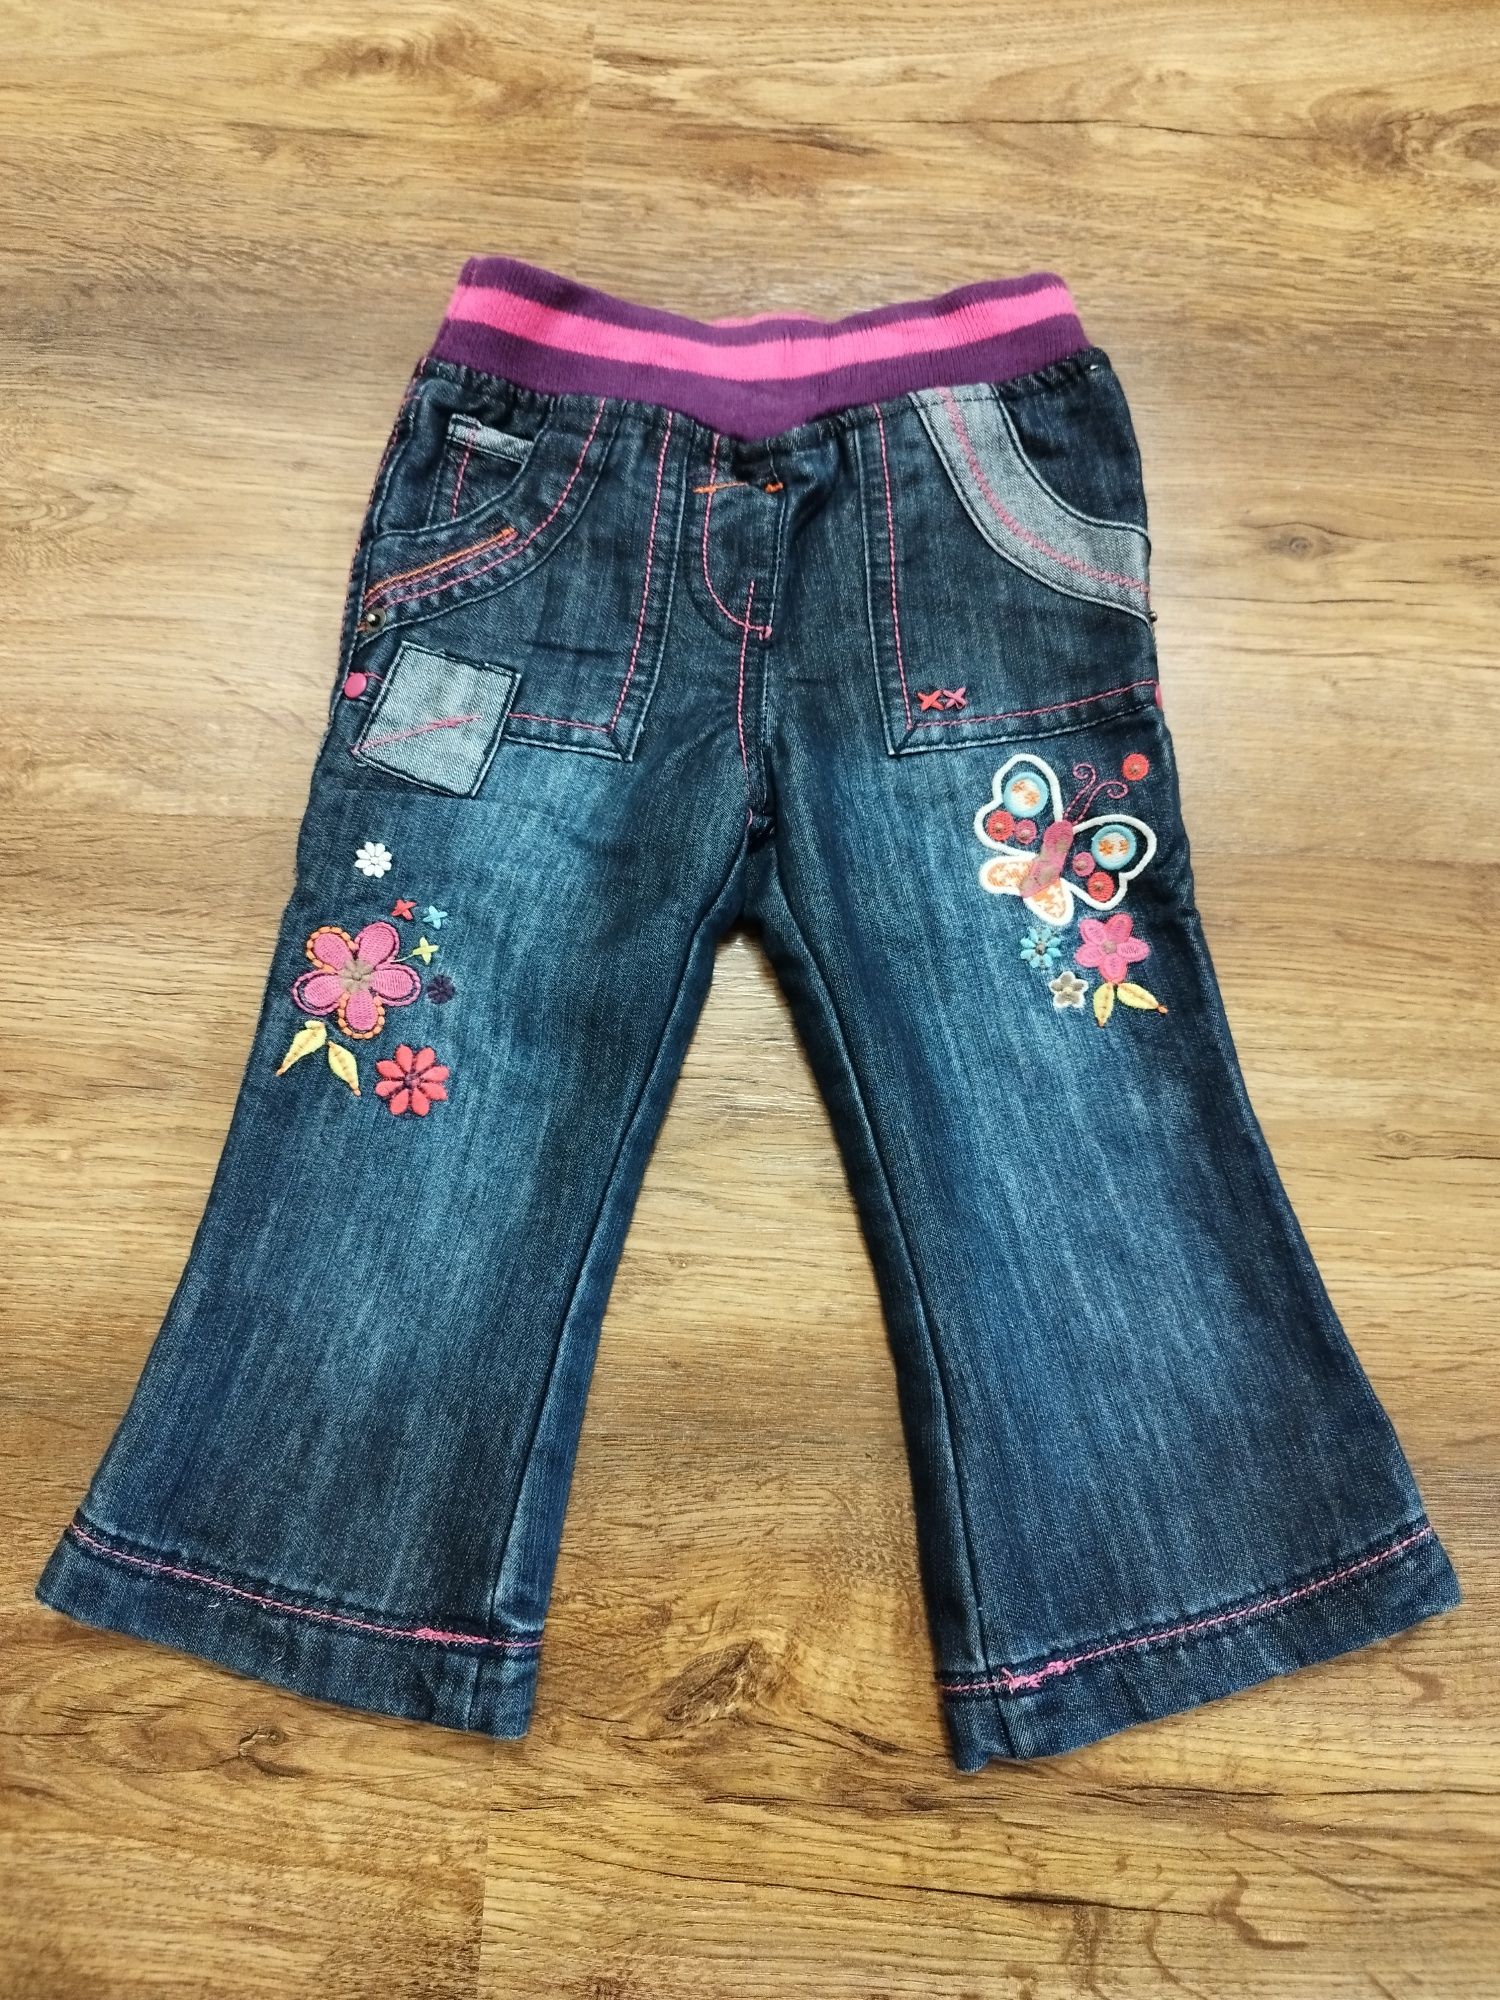 Spodnie jeansowe dla dziewczynki R.80/86 Hafty, ciemne